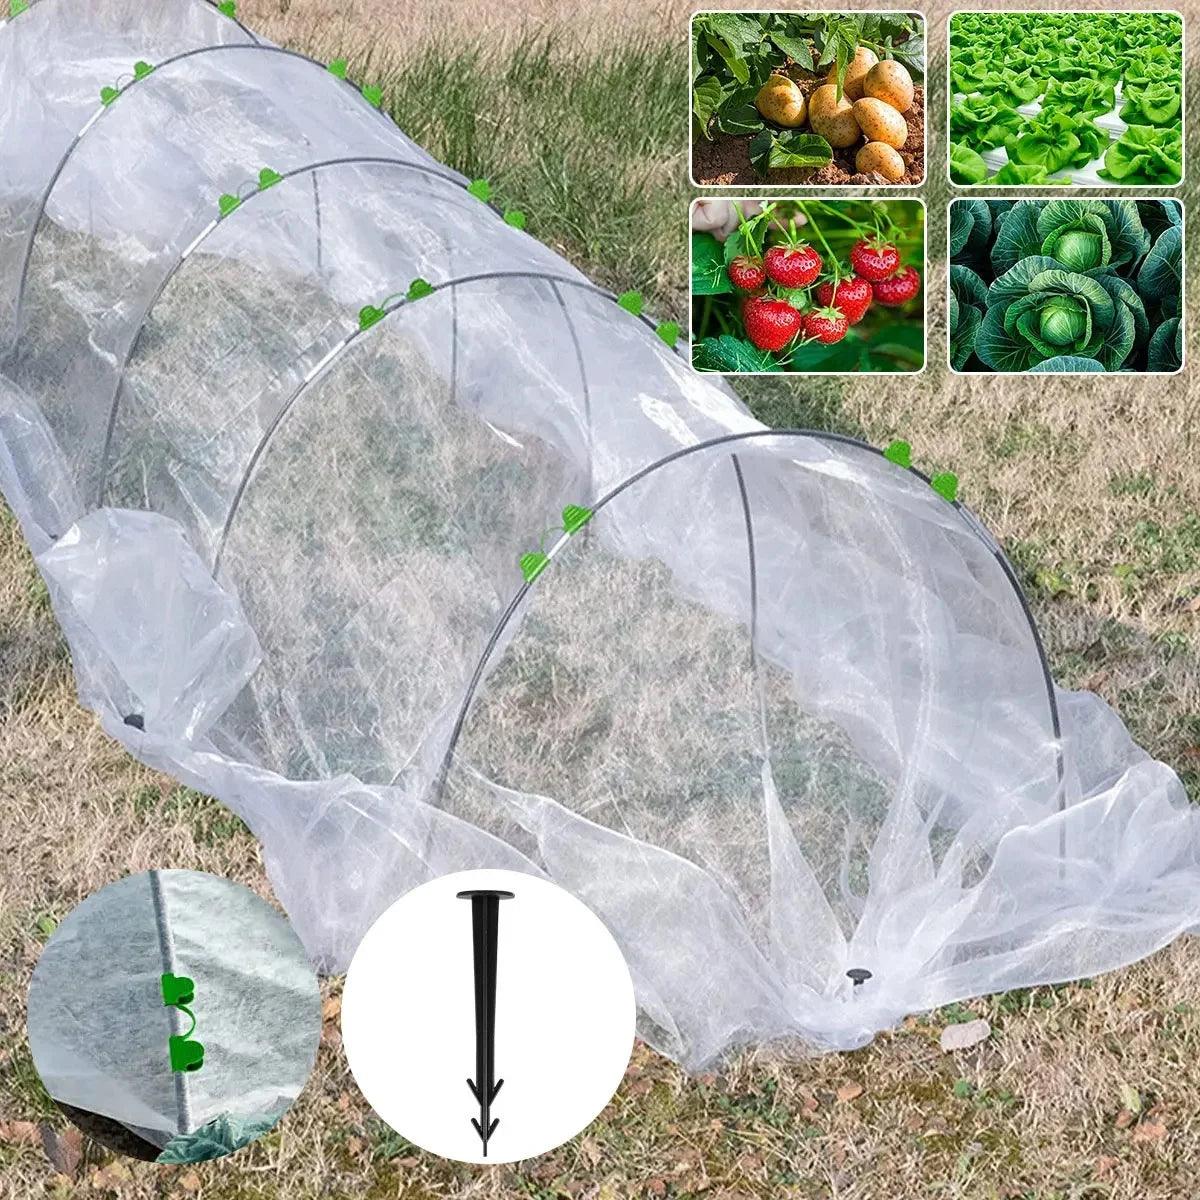 Aros de Fibra de Vidro: Durabilidade e Proteção para Seu Jardim. Invista na Saúde das Plantas